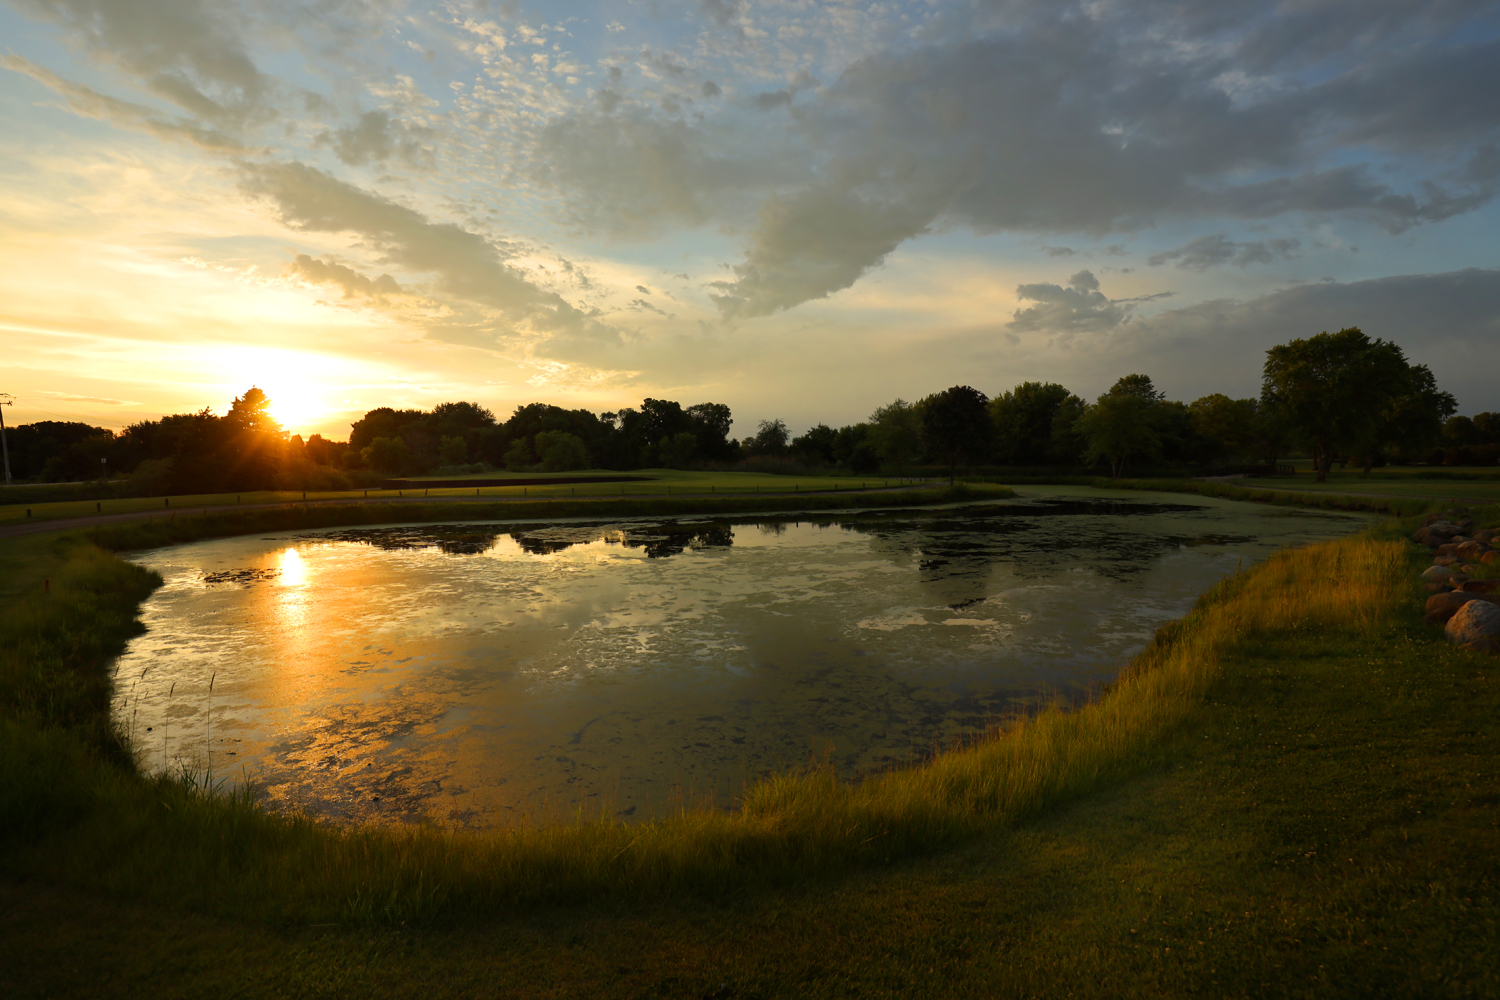 Blackberry Oaks Golf Course in Bristol, IL June 11, 2021 - Photo by Jeff Haynes